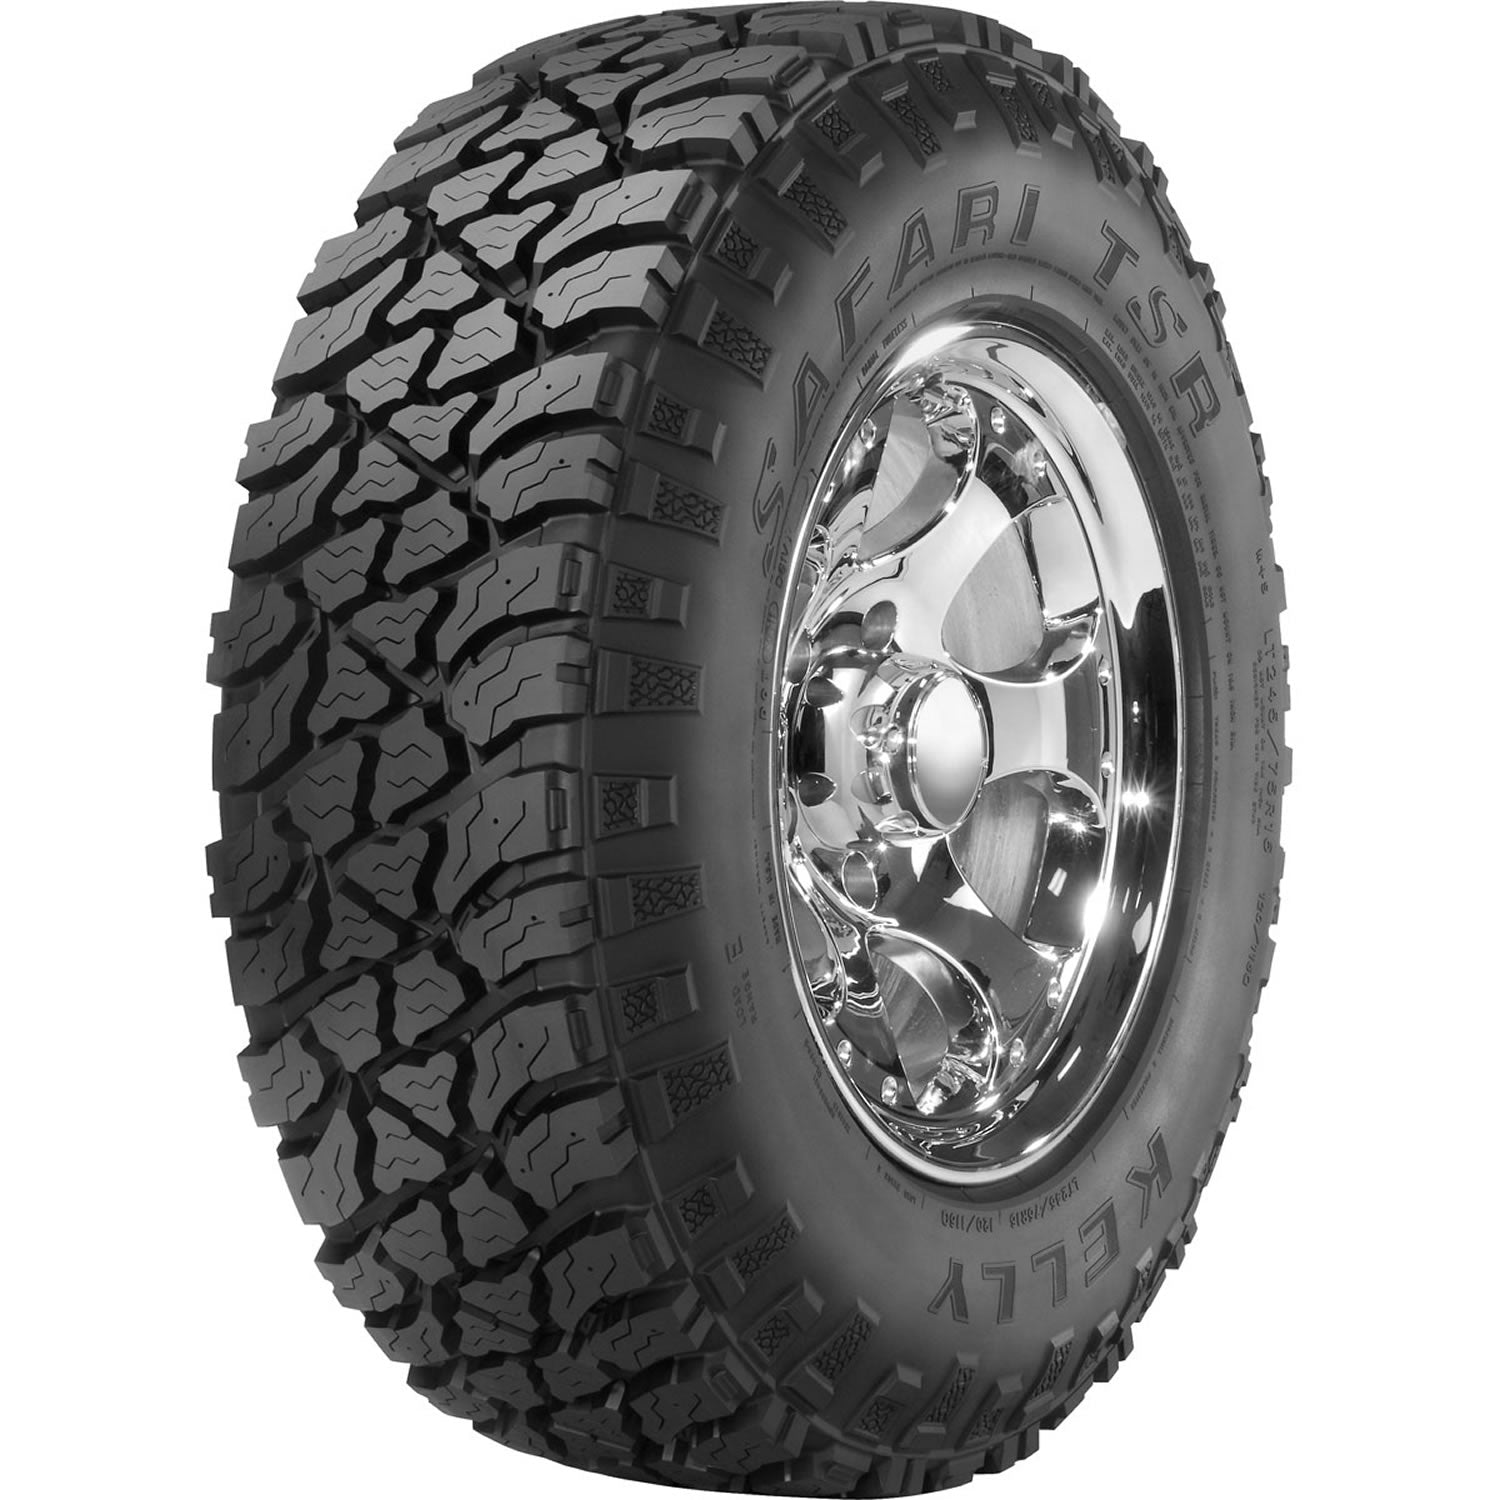 KELLY SAFARI TSR LT235/80R17 (31.8X9.3R 17) Tires